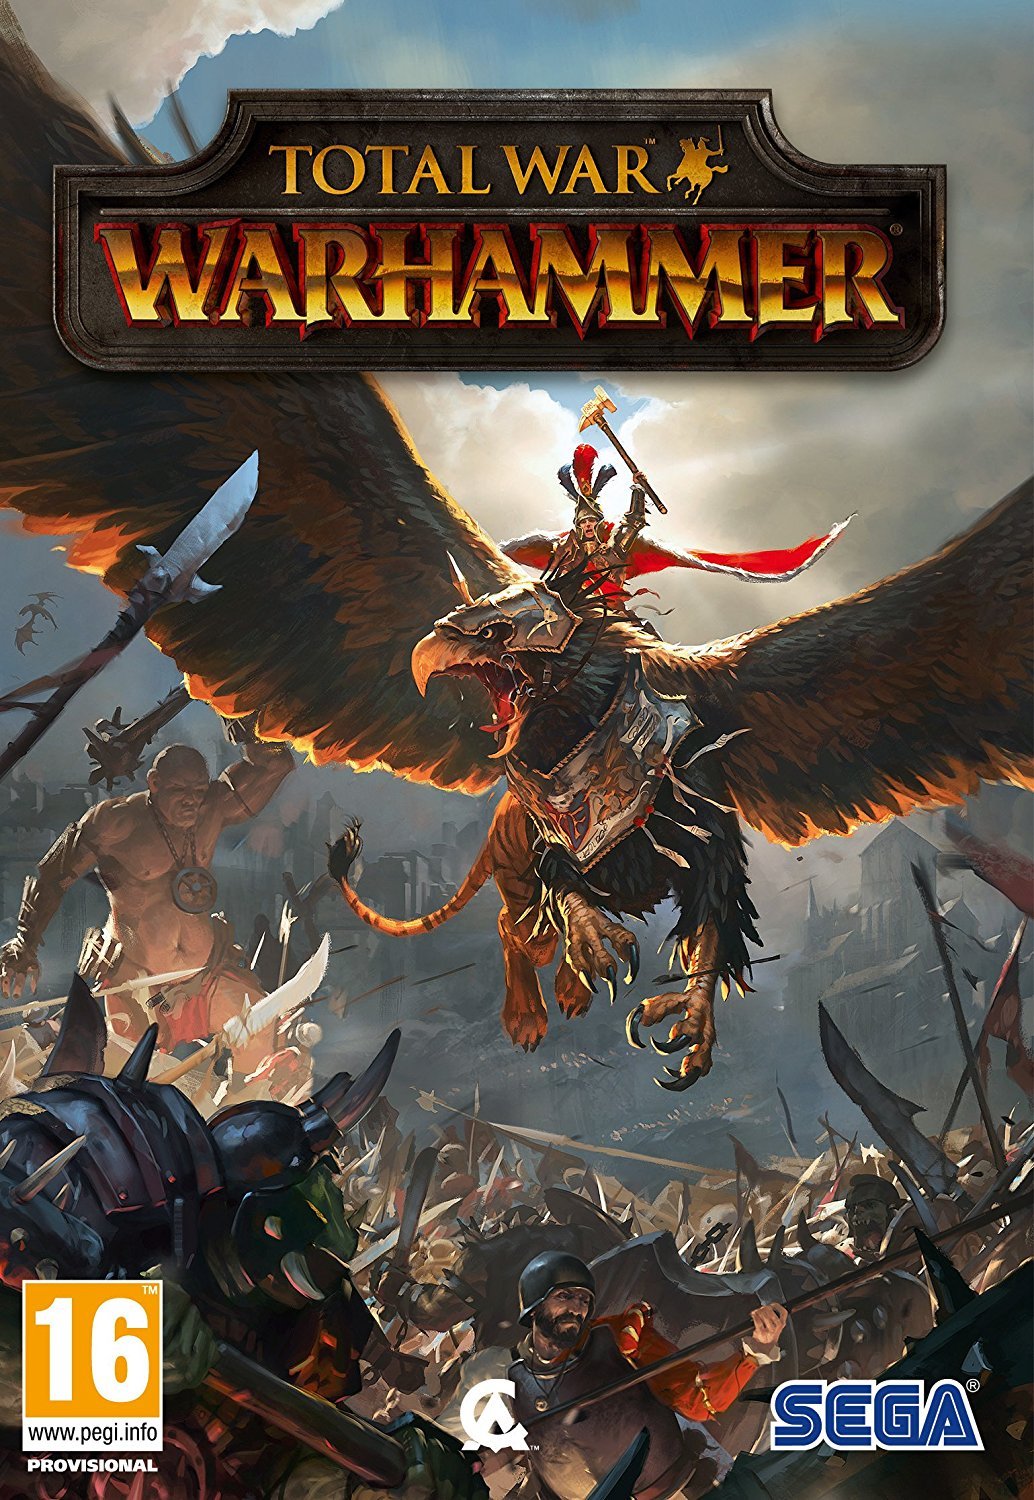 Total War: WARHAMMER ENG PC - SEGA 1.18.01.22.057